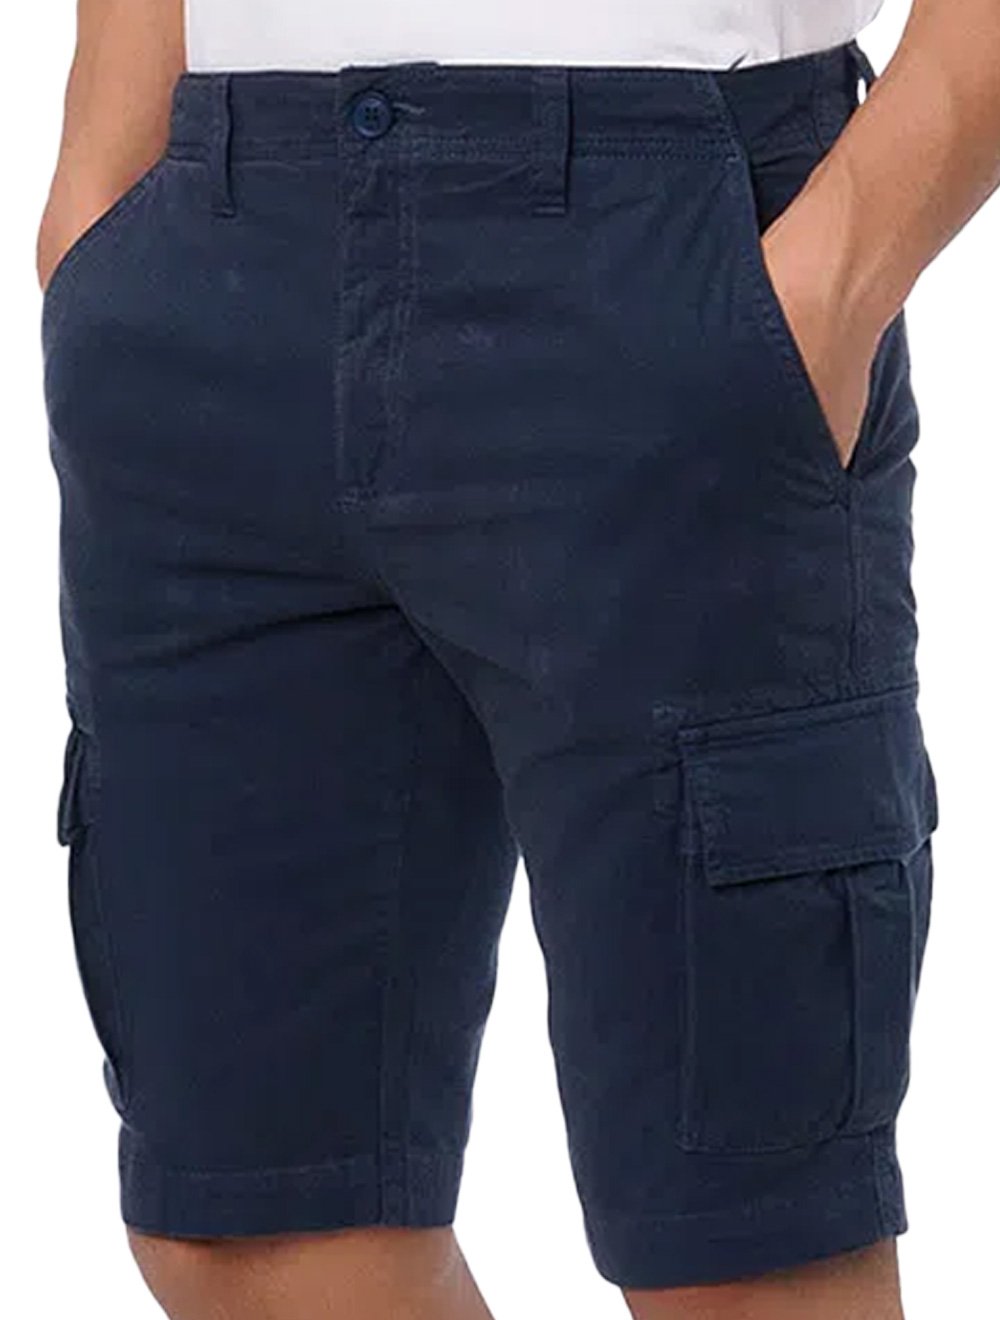 Bermuda Calvin Klein Jeans Masculina Color Cargo Azul Marinho